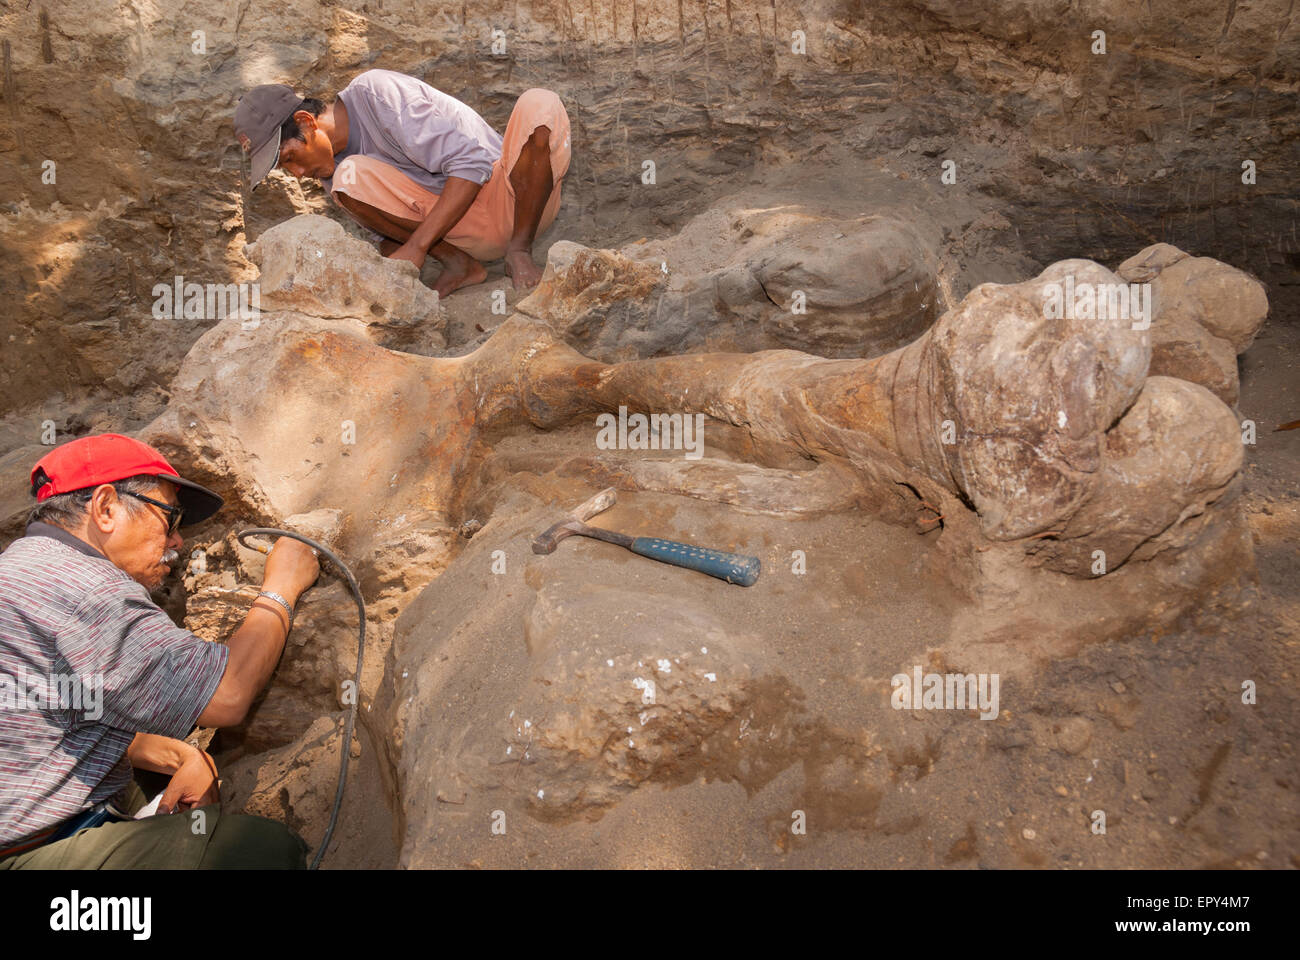 Fachroel Aziz, professore di ricerca di paleontologia vertebrata (con berretto da baseball rosso), sta lavorando durante uno scavo a Blora, Indonesia. Foto Stock